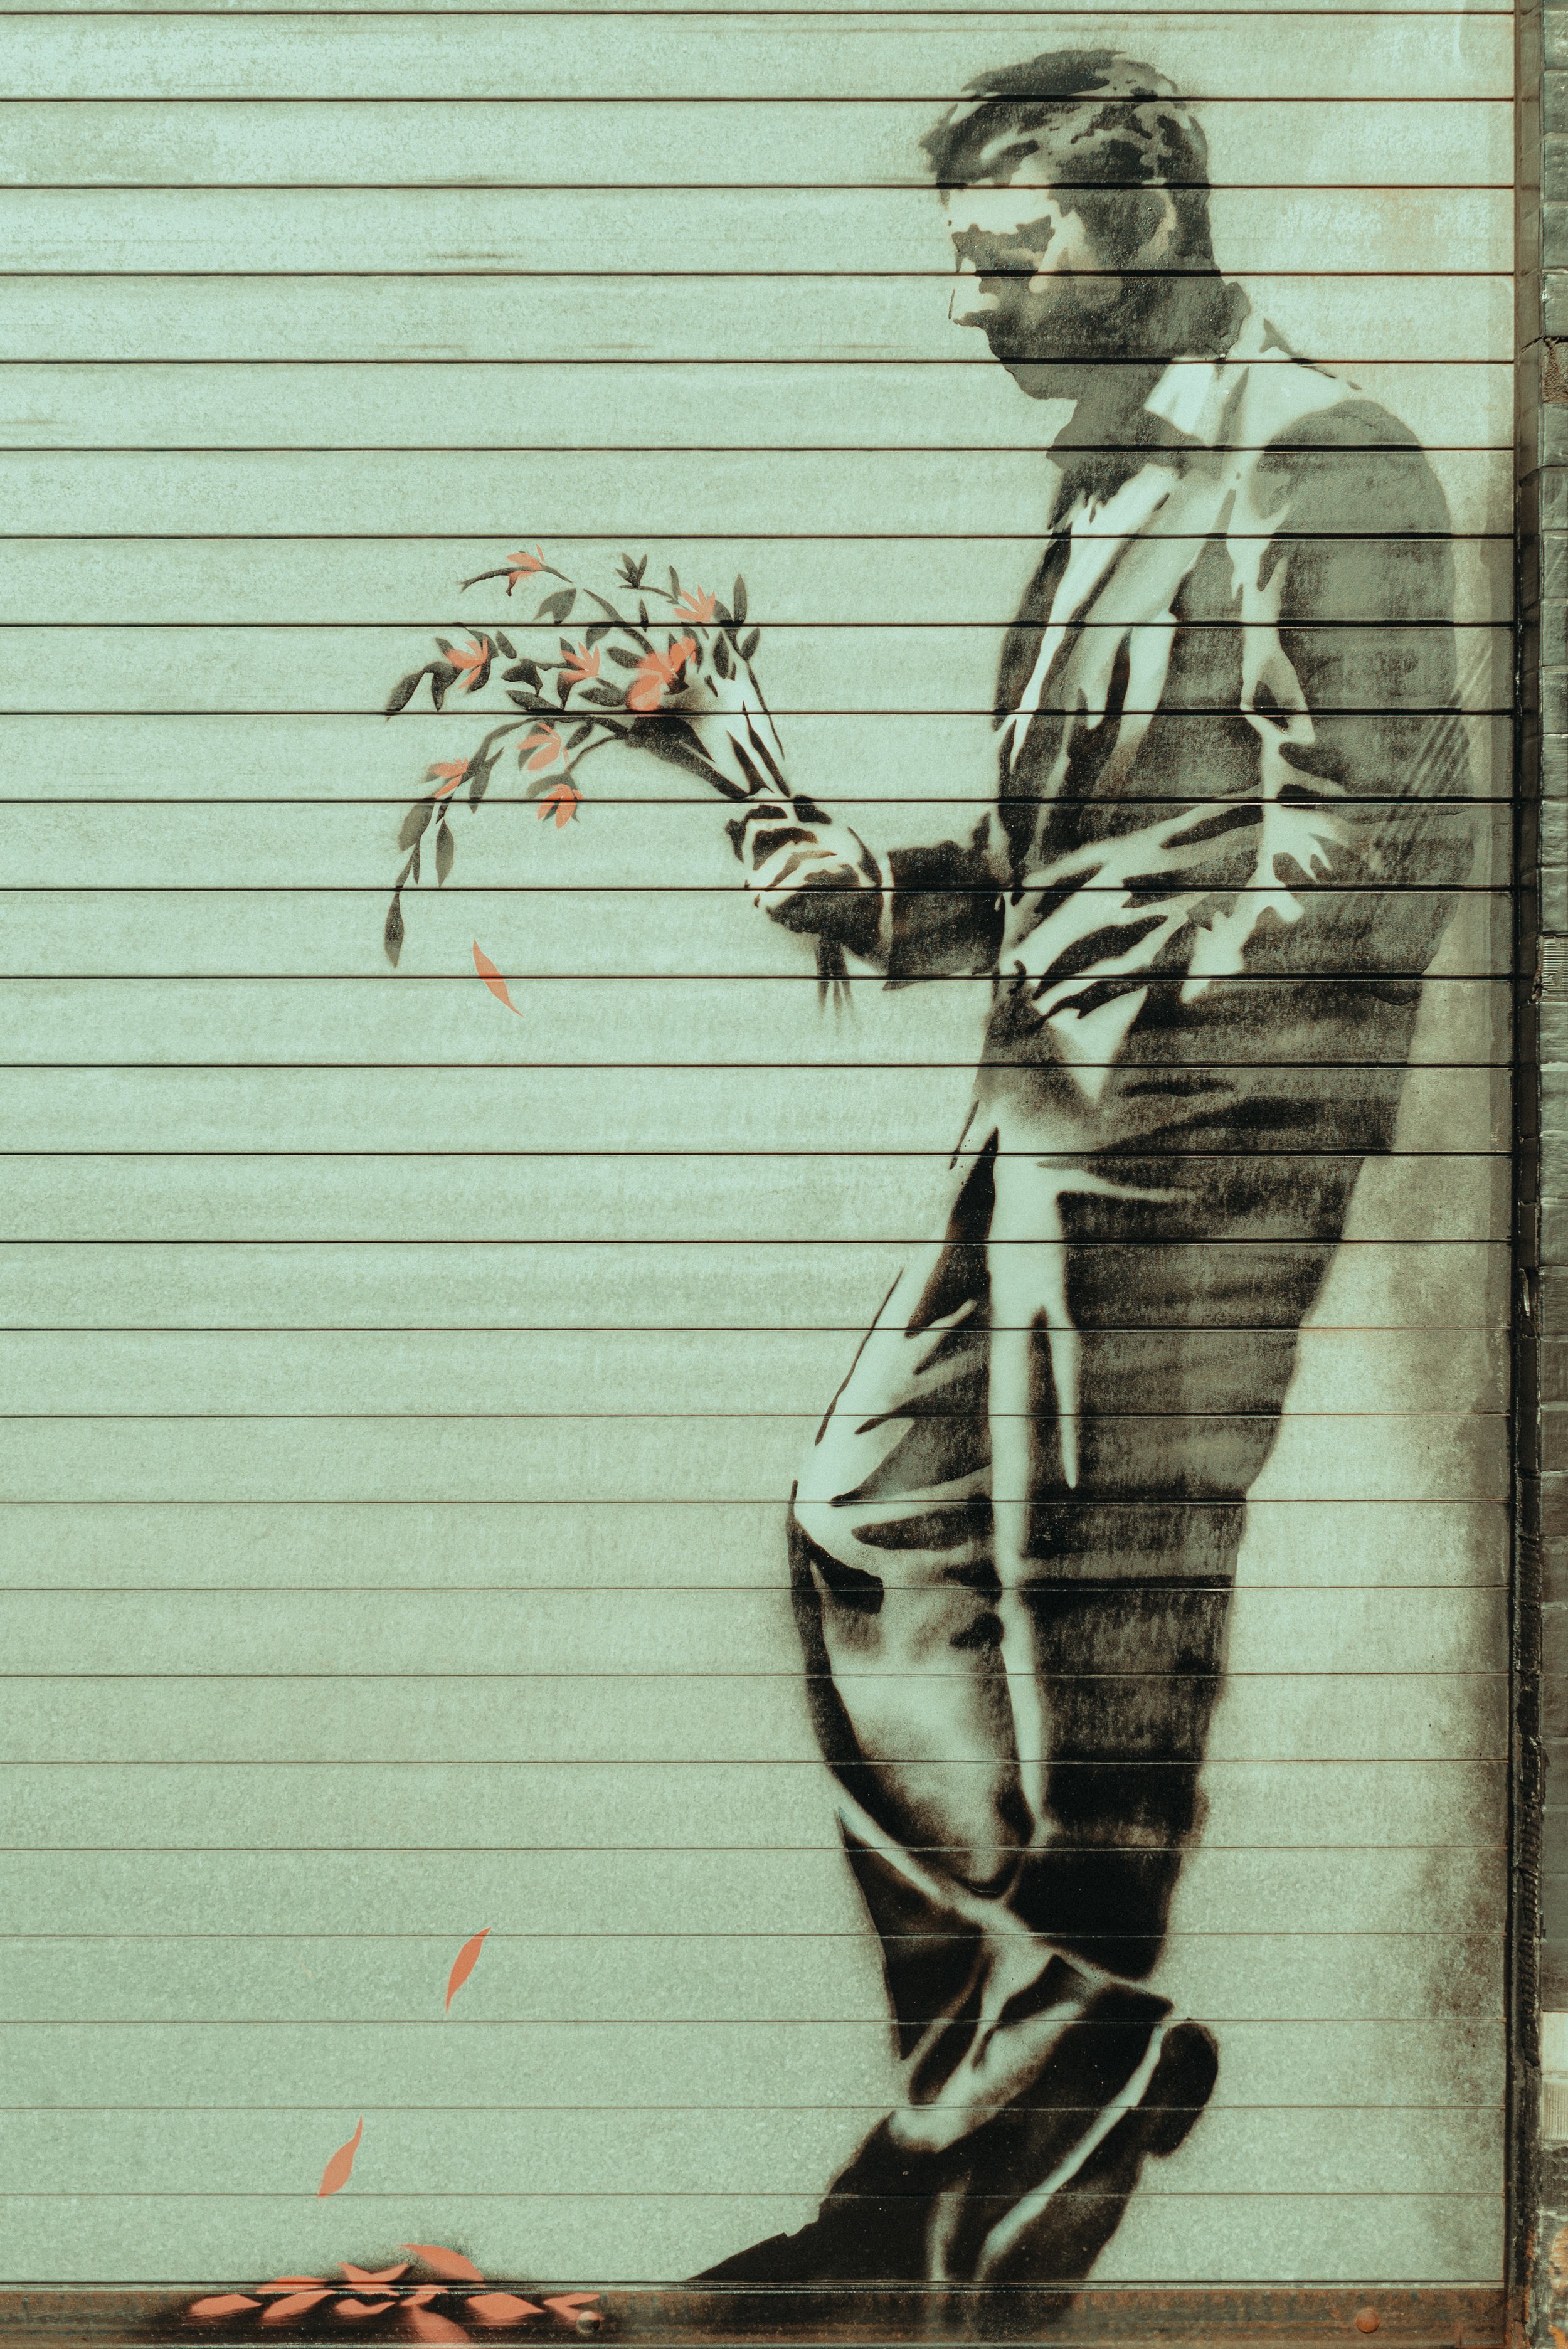 2013-10-24 Banksy Mural at Hustler Club NYC-13.jpg